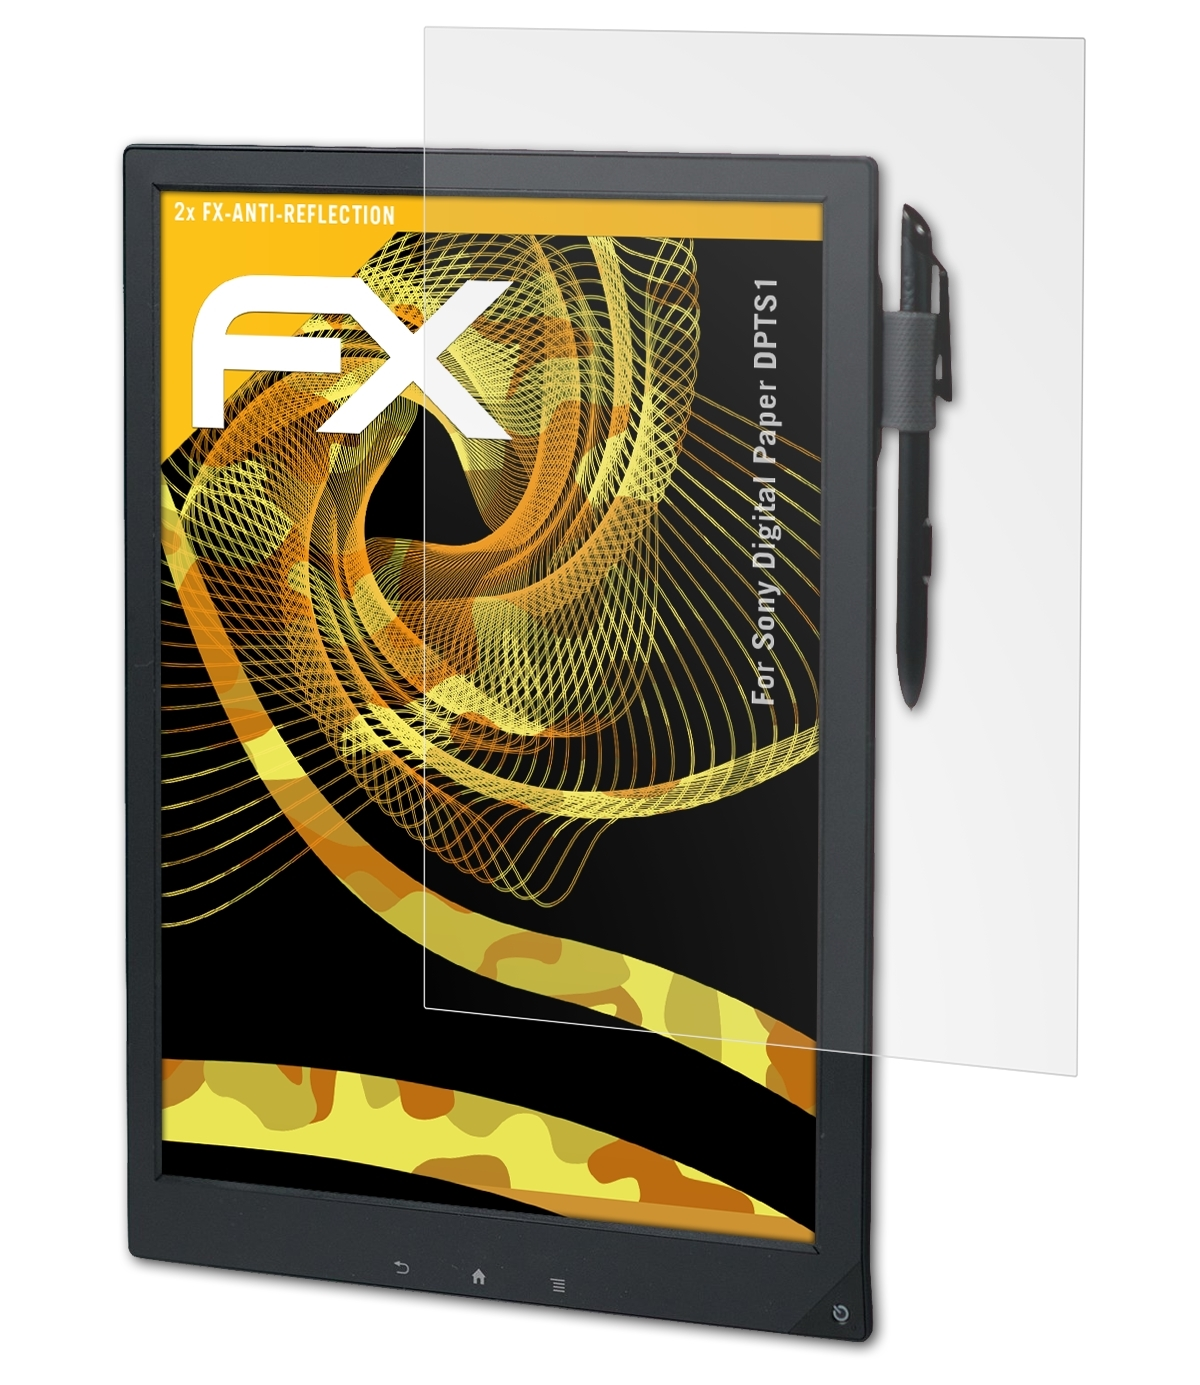 ATFOLIX 2x FX-Antireflex (DPTS1)) Digital Paper Sony Displayschutz(für